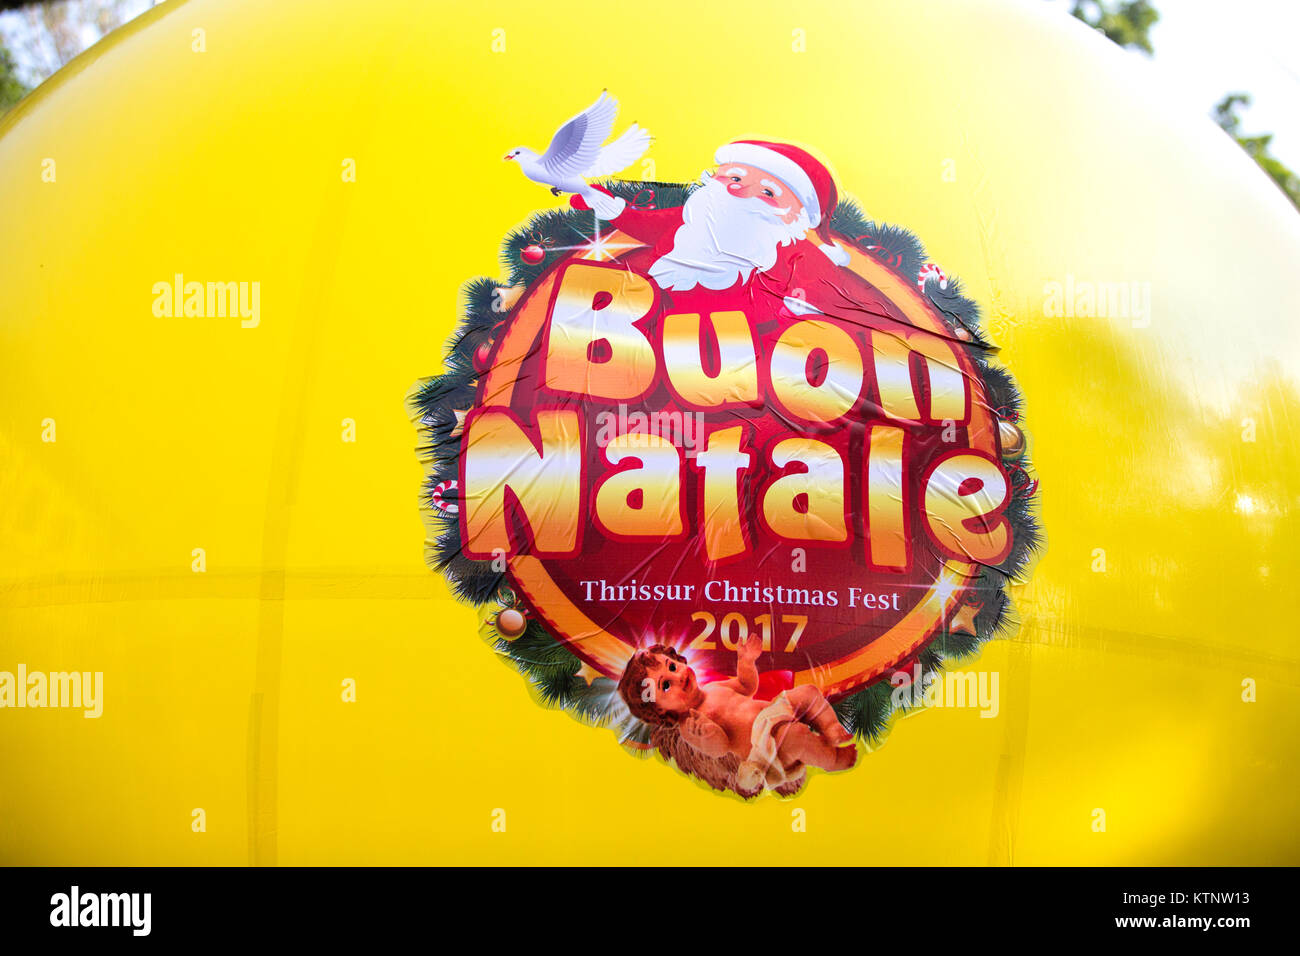 Gelber Ballon von Buon Natale thrissur Christmas Festival 2017, thrissur, Kerala, Indien. Mehr 5000 Santa's in diesem Falle teilgenommen. Es ist eine jährliche Veranstaltung, die von thrissur Bezirk christliche Gemeinschaft eine einzigartige christliche Gemeinschaft Festival in Kerala und Indien durchgeführt. Stockfoto